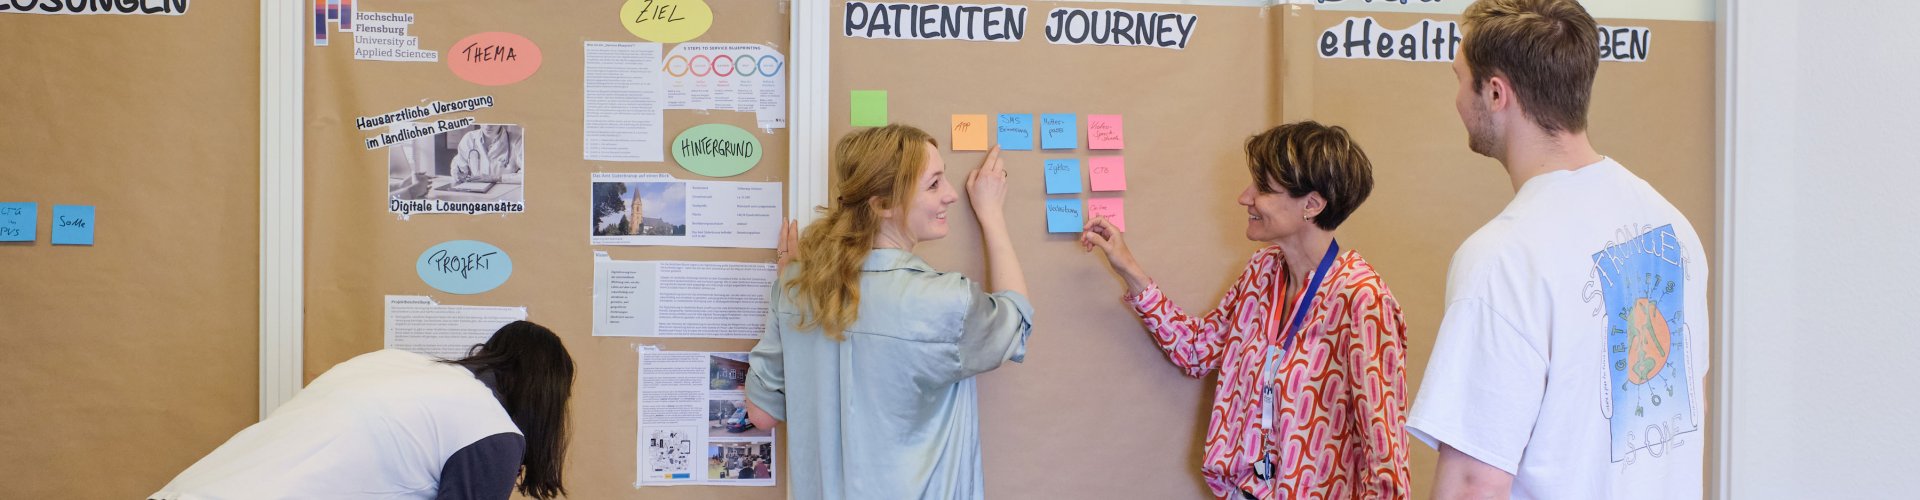 Studierende und Dozentin vor einer Pinnwand. Sie sind im Gespräch. Zu erkennen sind Wörter wie "eHealth" und "Patienten Journey".